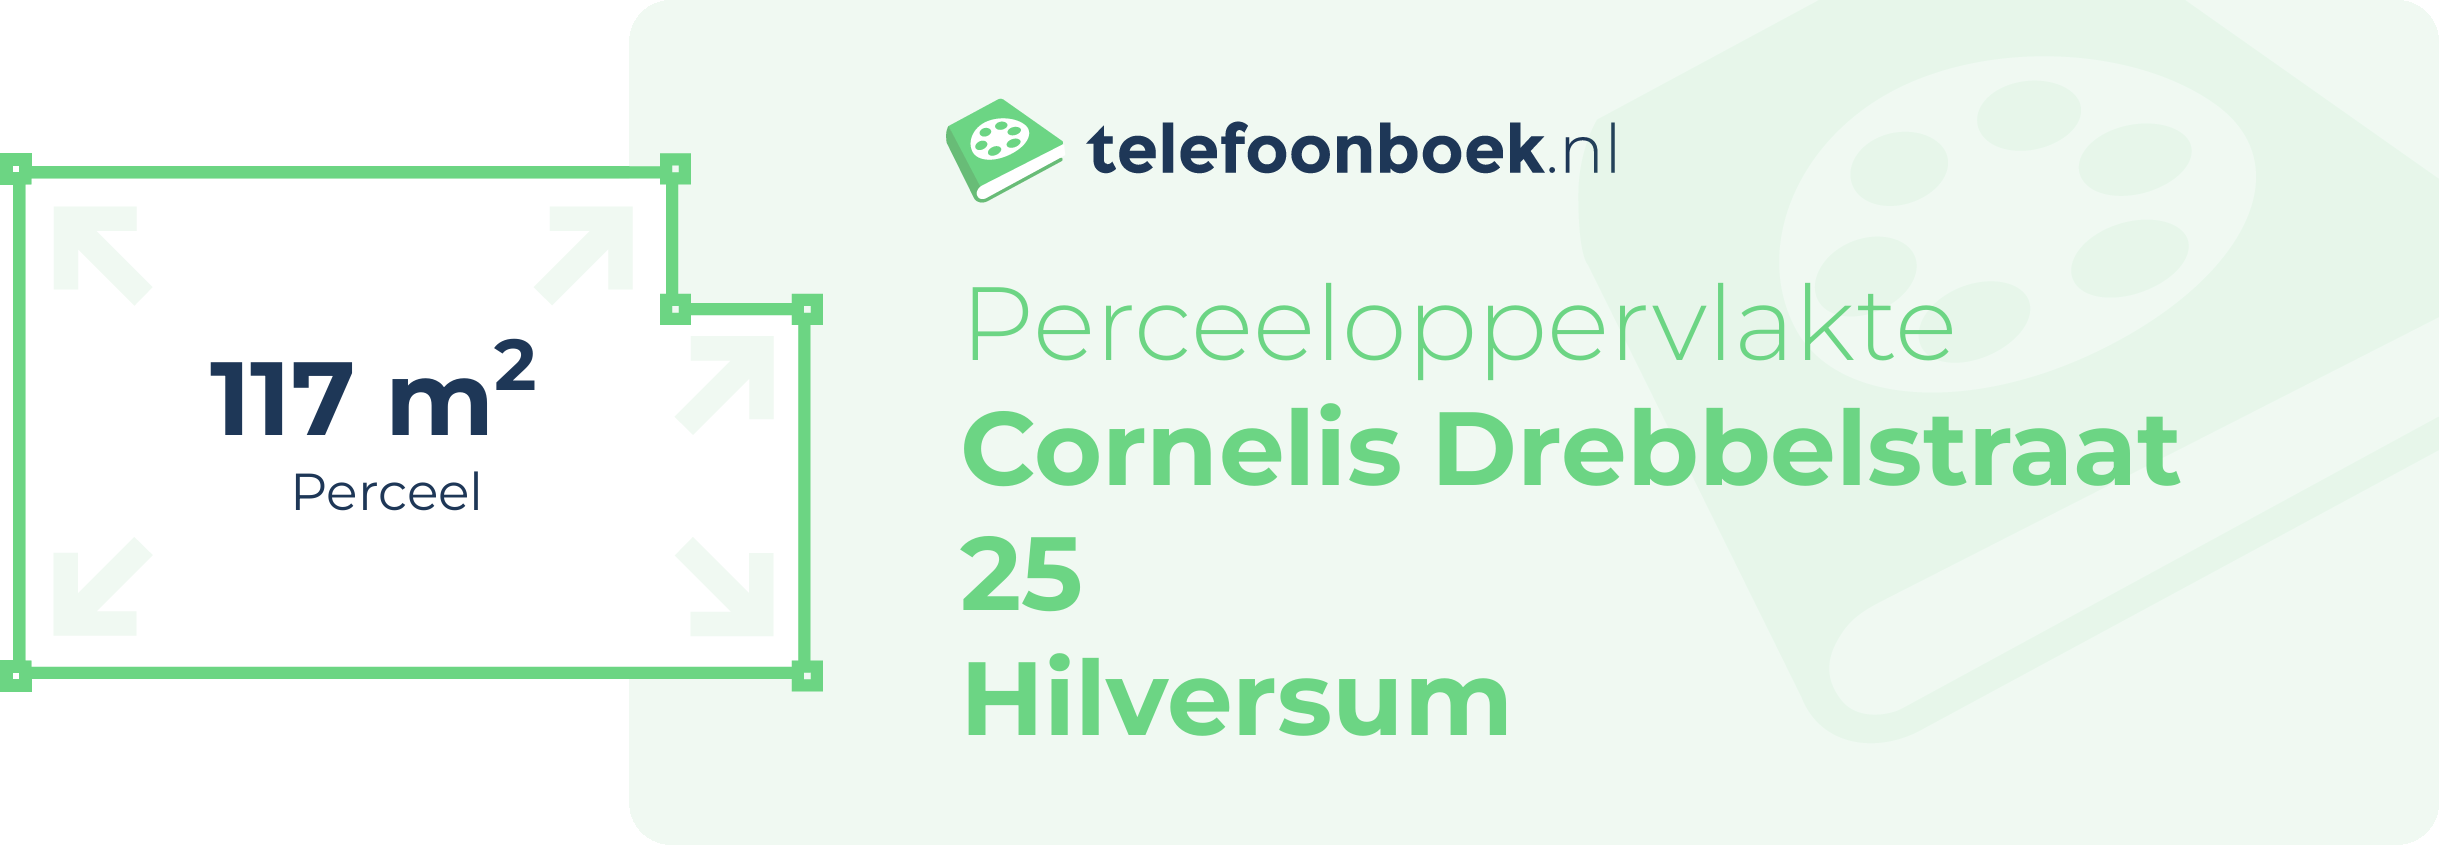 Perceeloppervlakte Cornelis Drebbelstraat 25 Hilversum